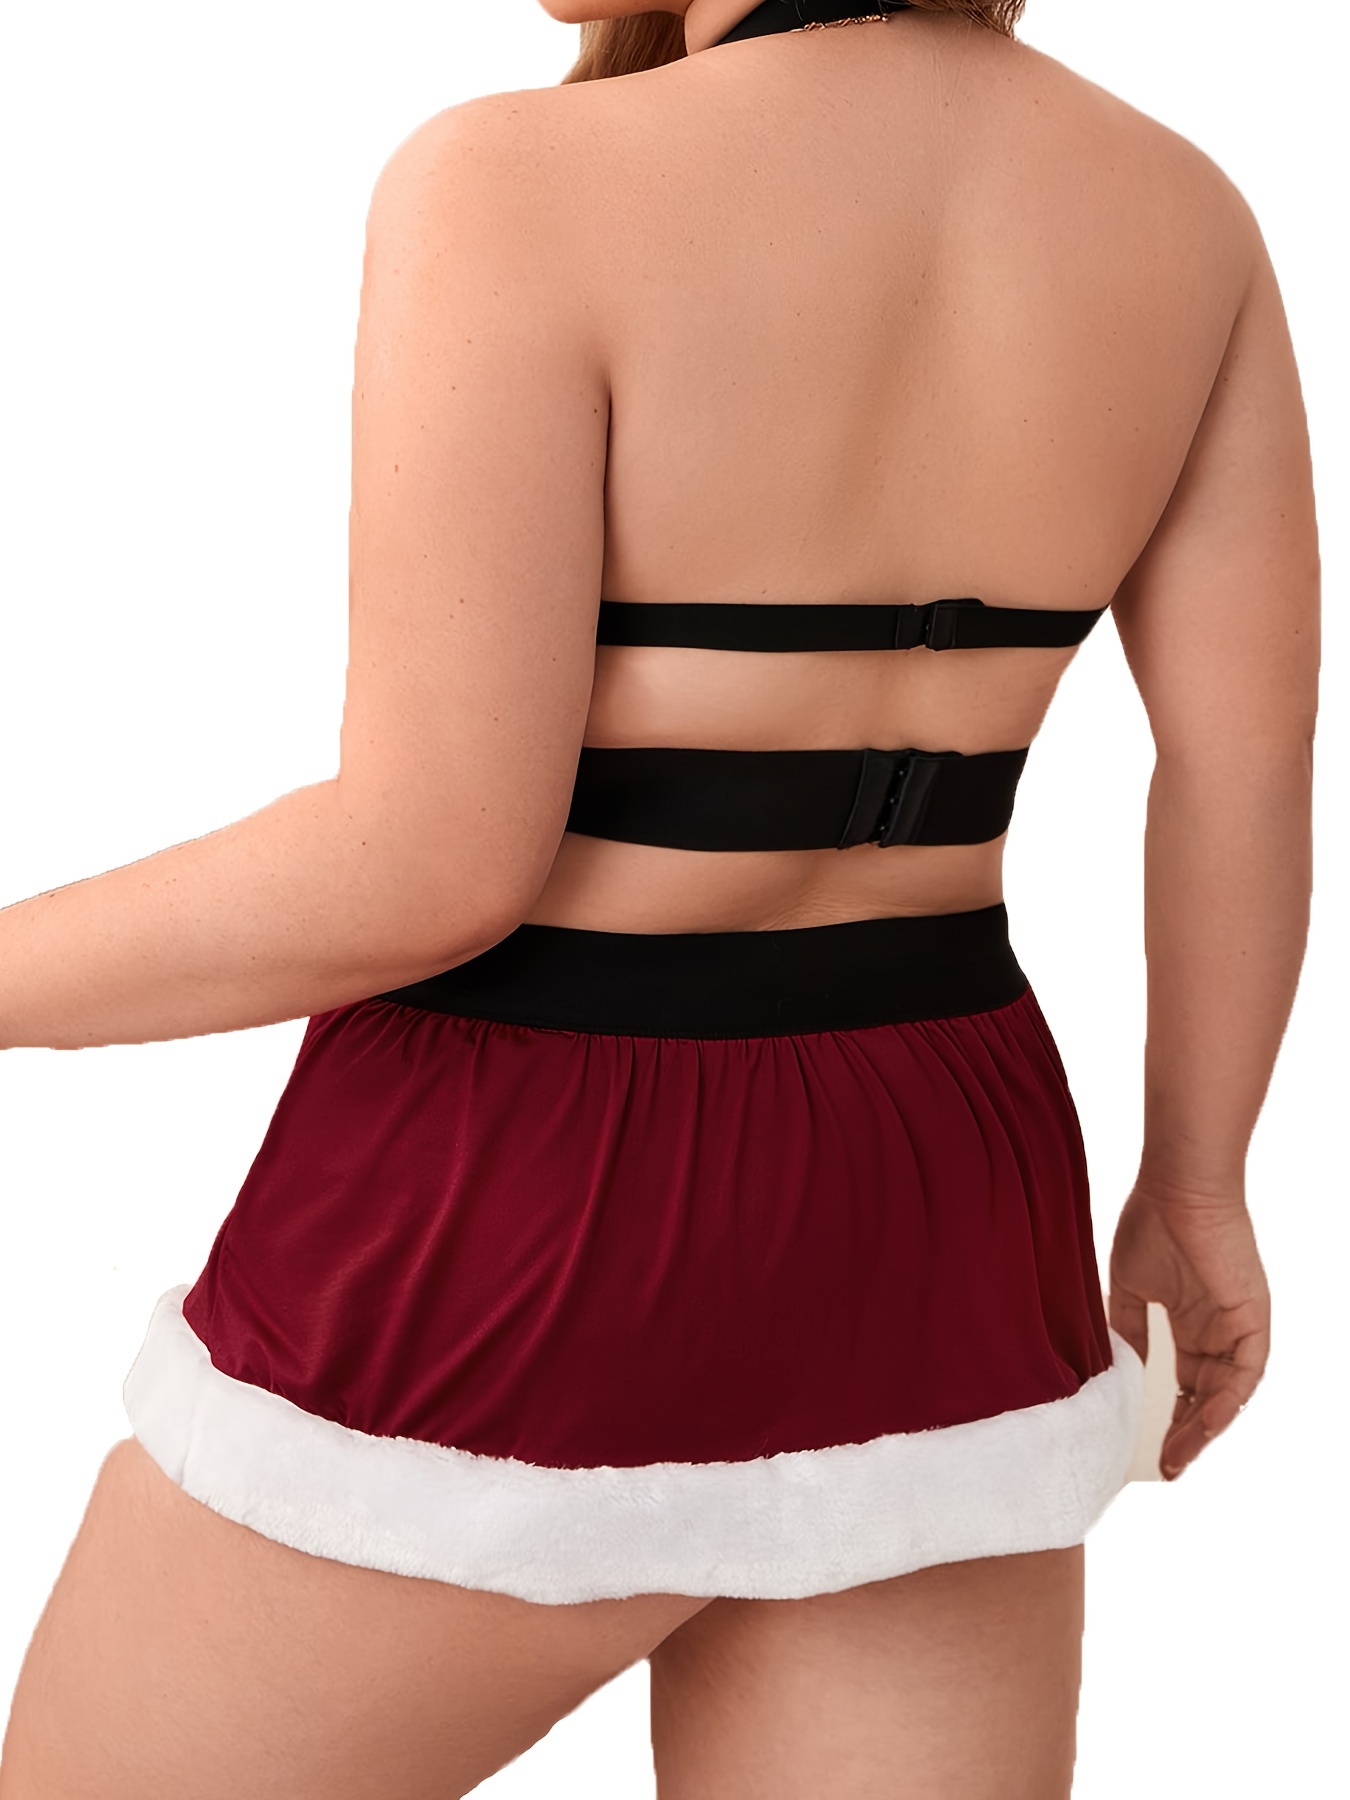 Backless Halter Bra Top and Bodycon Skirt Set for Women's Lingerie